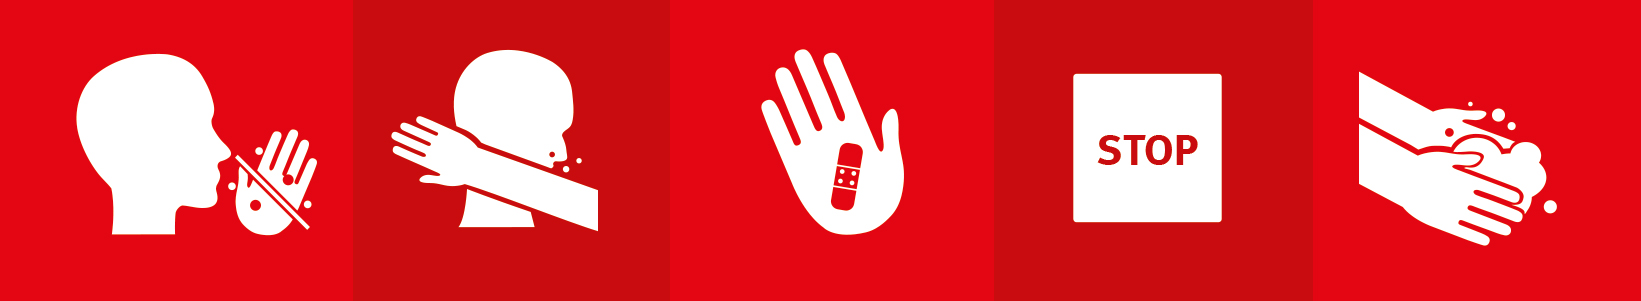 Fünf rote Felder zeigen fünf weiße Symbole. Es handelt sich um Symbole aus den sechs Hygienetipps für die Fahrt in den Bussen und Bahnen der BSAG.